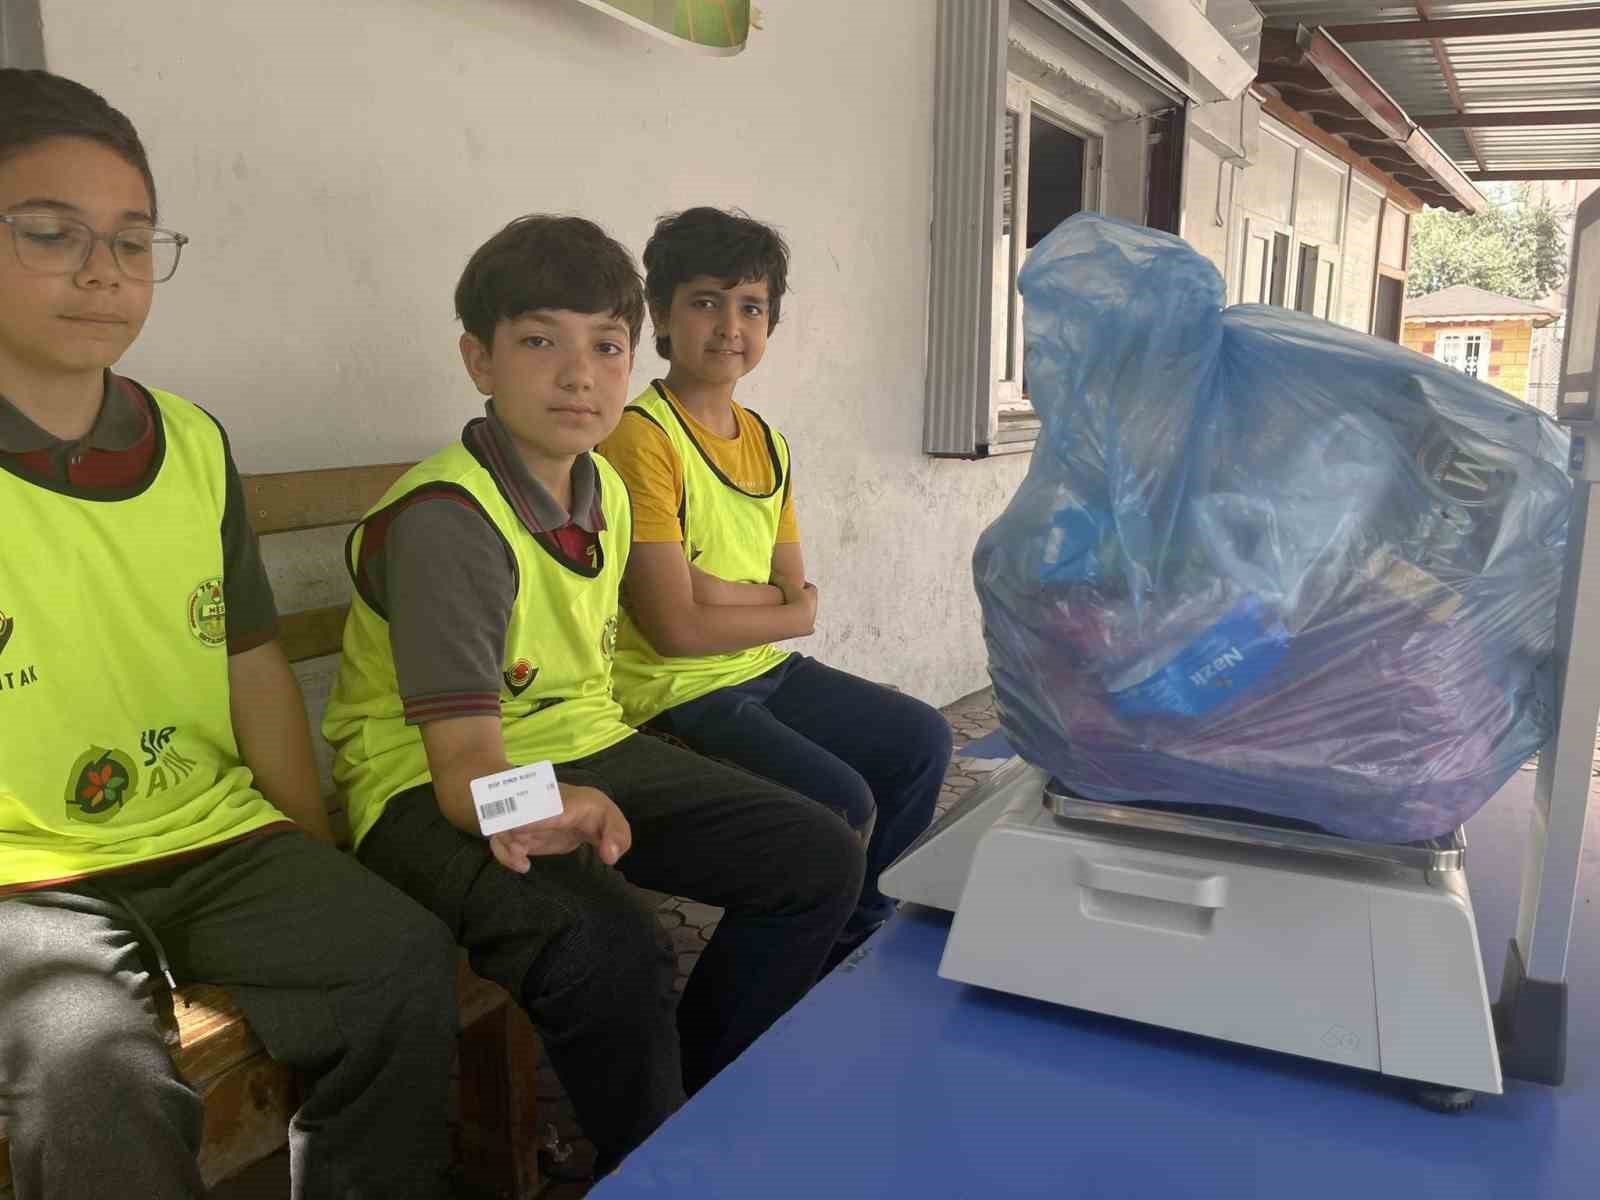 Ödül almak isteyen öğrenciler, okula poşet poşet çöp taşıyor
